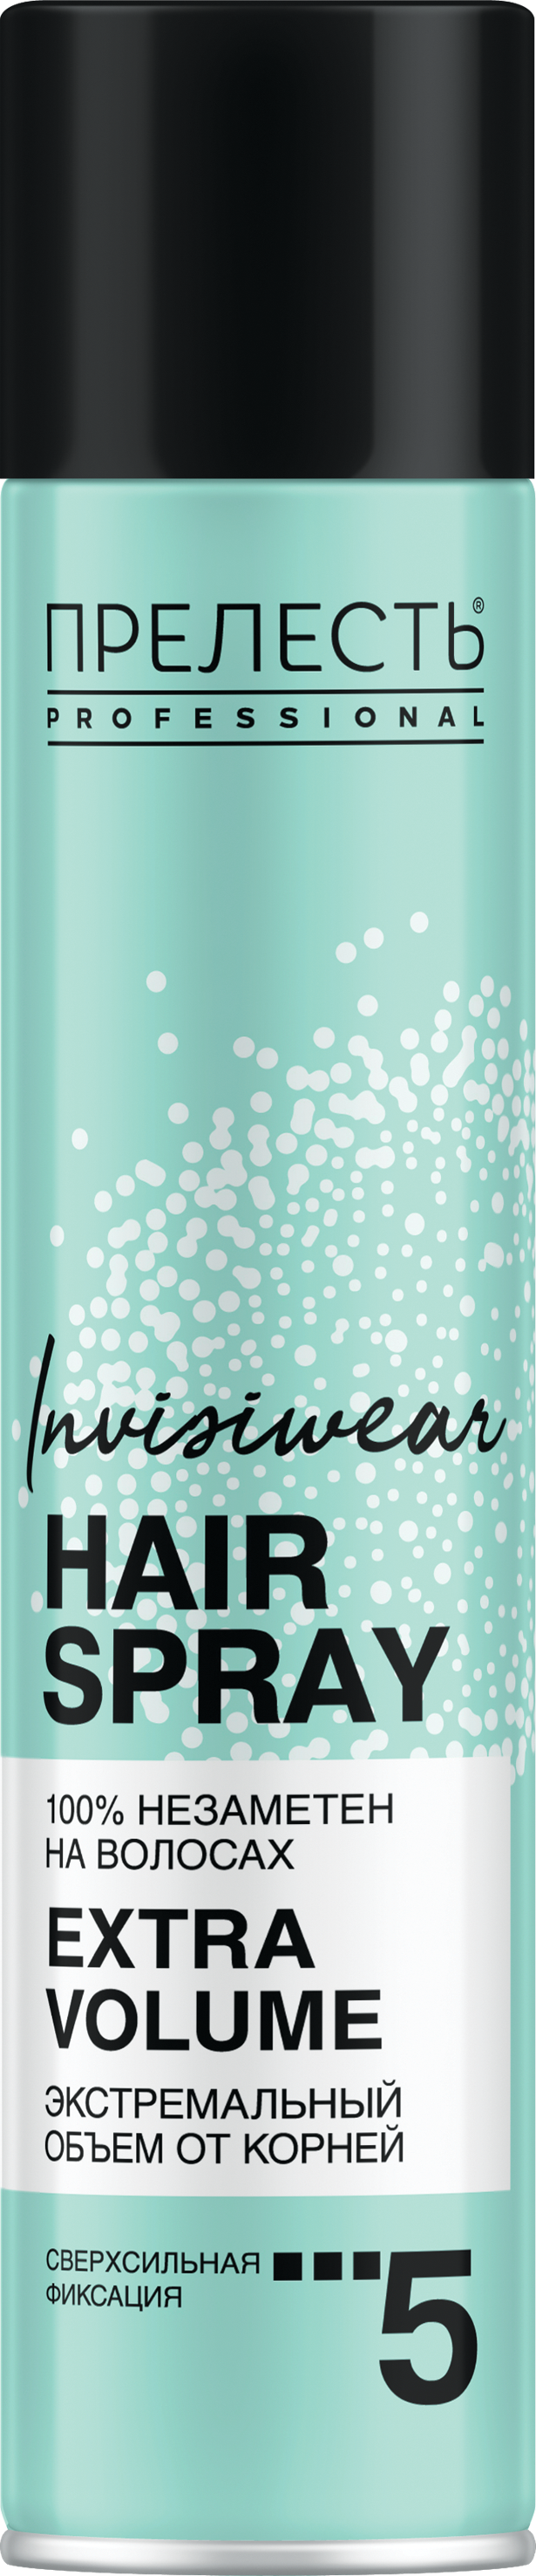 Лак для волос Прелесть Invisiwear Невесомый, экстремальный объем, 300 мл ультралегкий сухой лак для волос shaper zero gravity